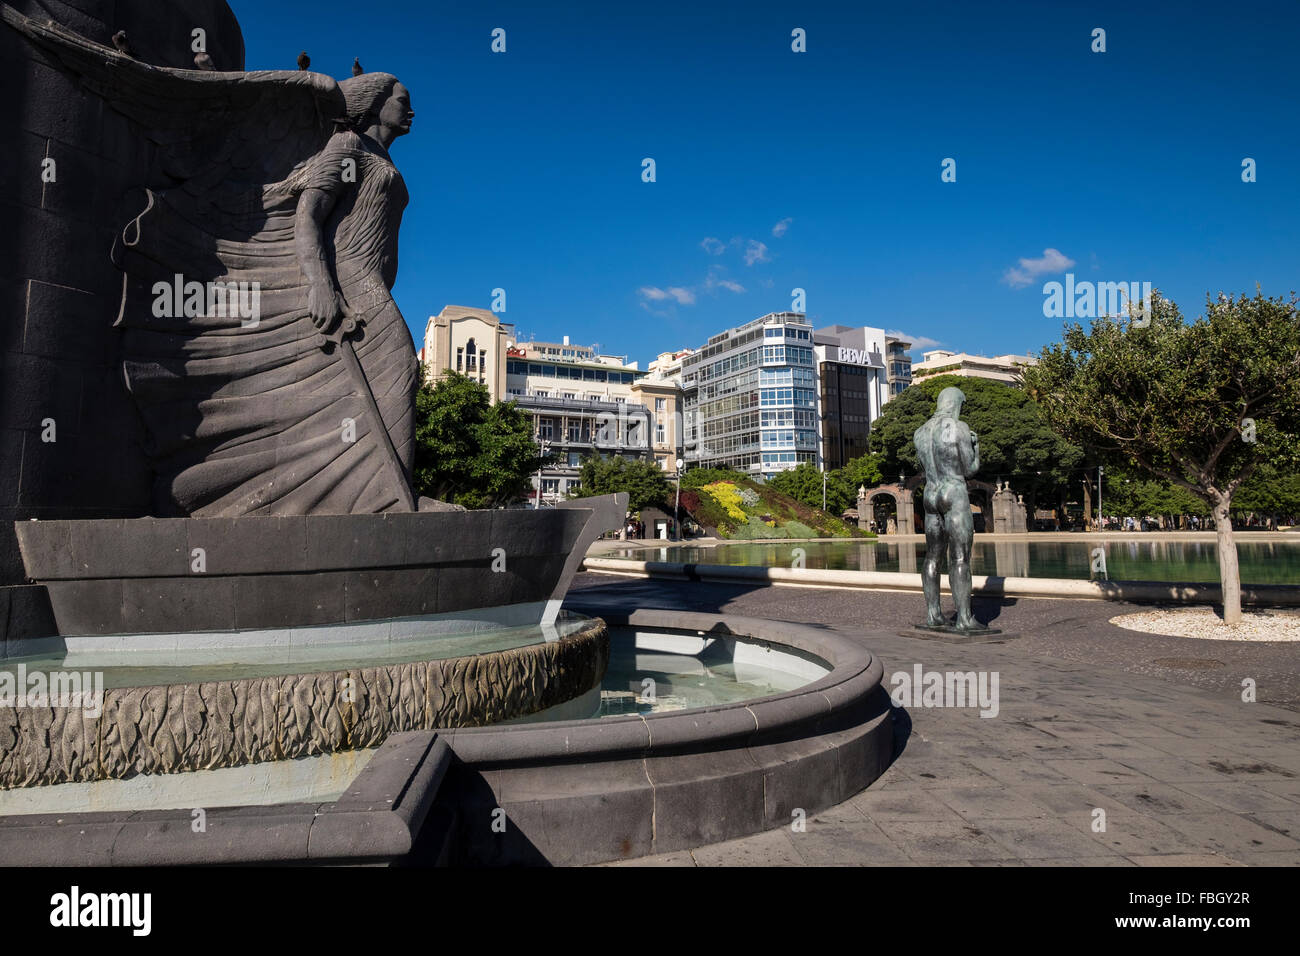 Statue für die gefallenen Soldaten des spanischen Militärs in der Plaza de Espana, Santa Cruz, Teneriffa, Kanarische Inseln, Spanien. Stockfoto